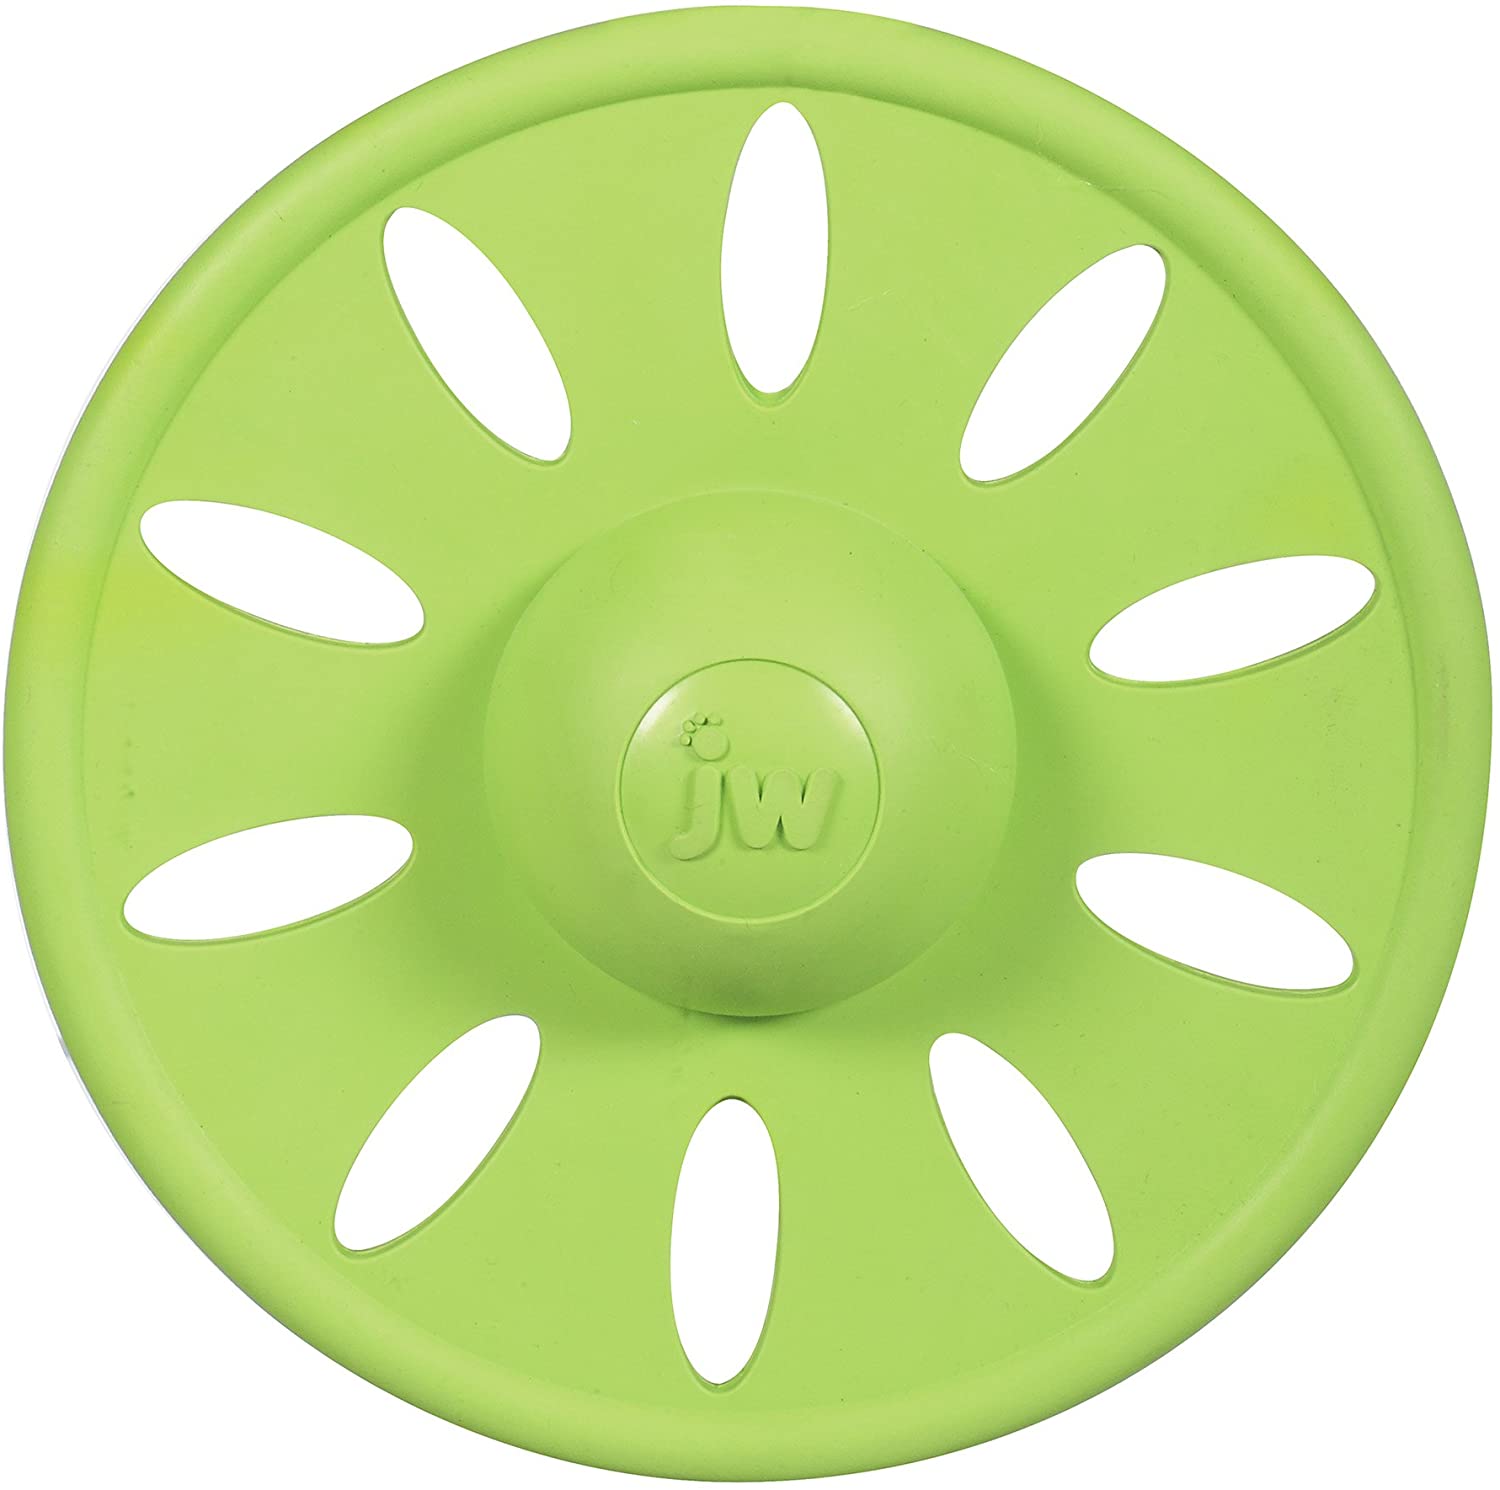  JW Pet Company Whirlwheel Disco Volador para Perro, Grande, los Colores Pueden Variar 